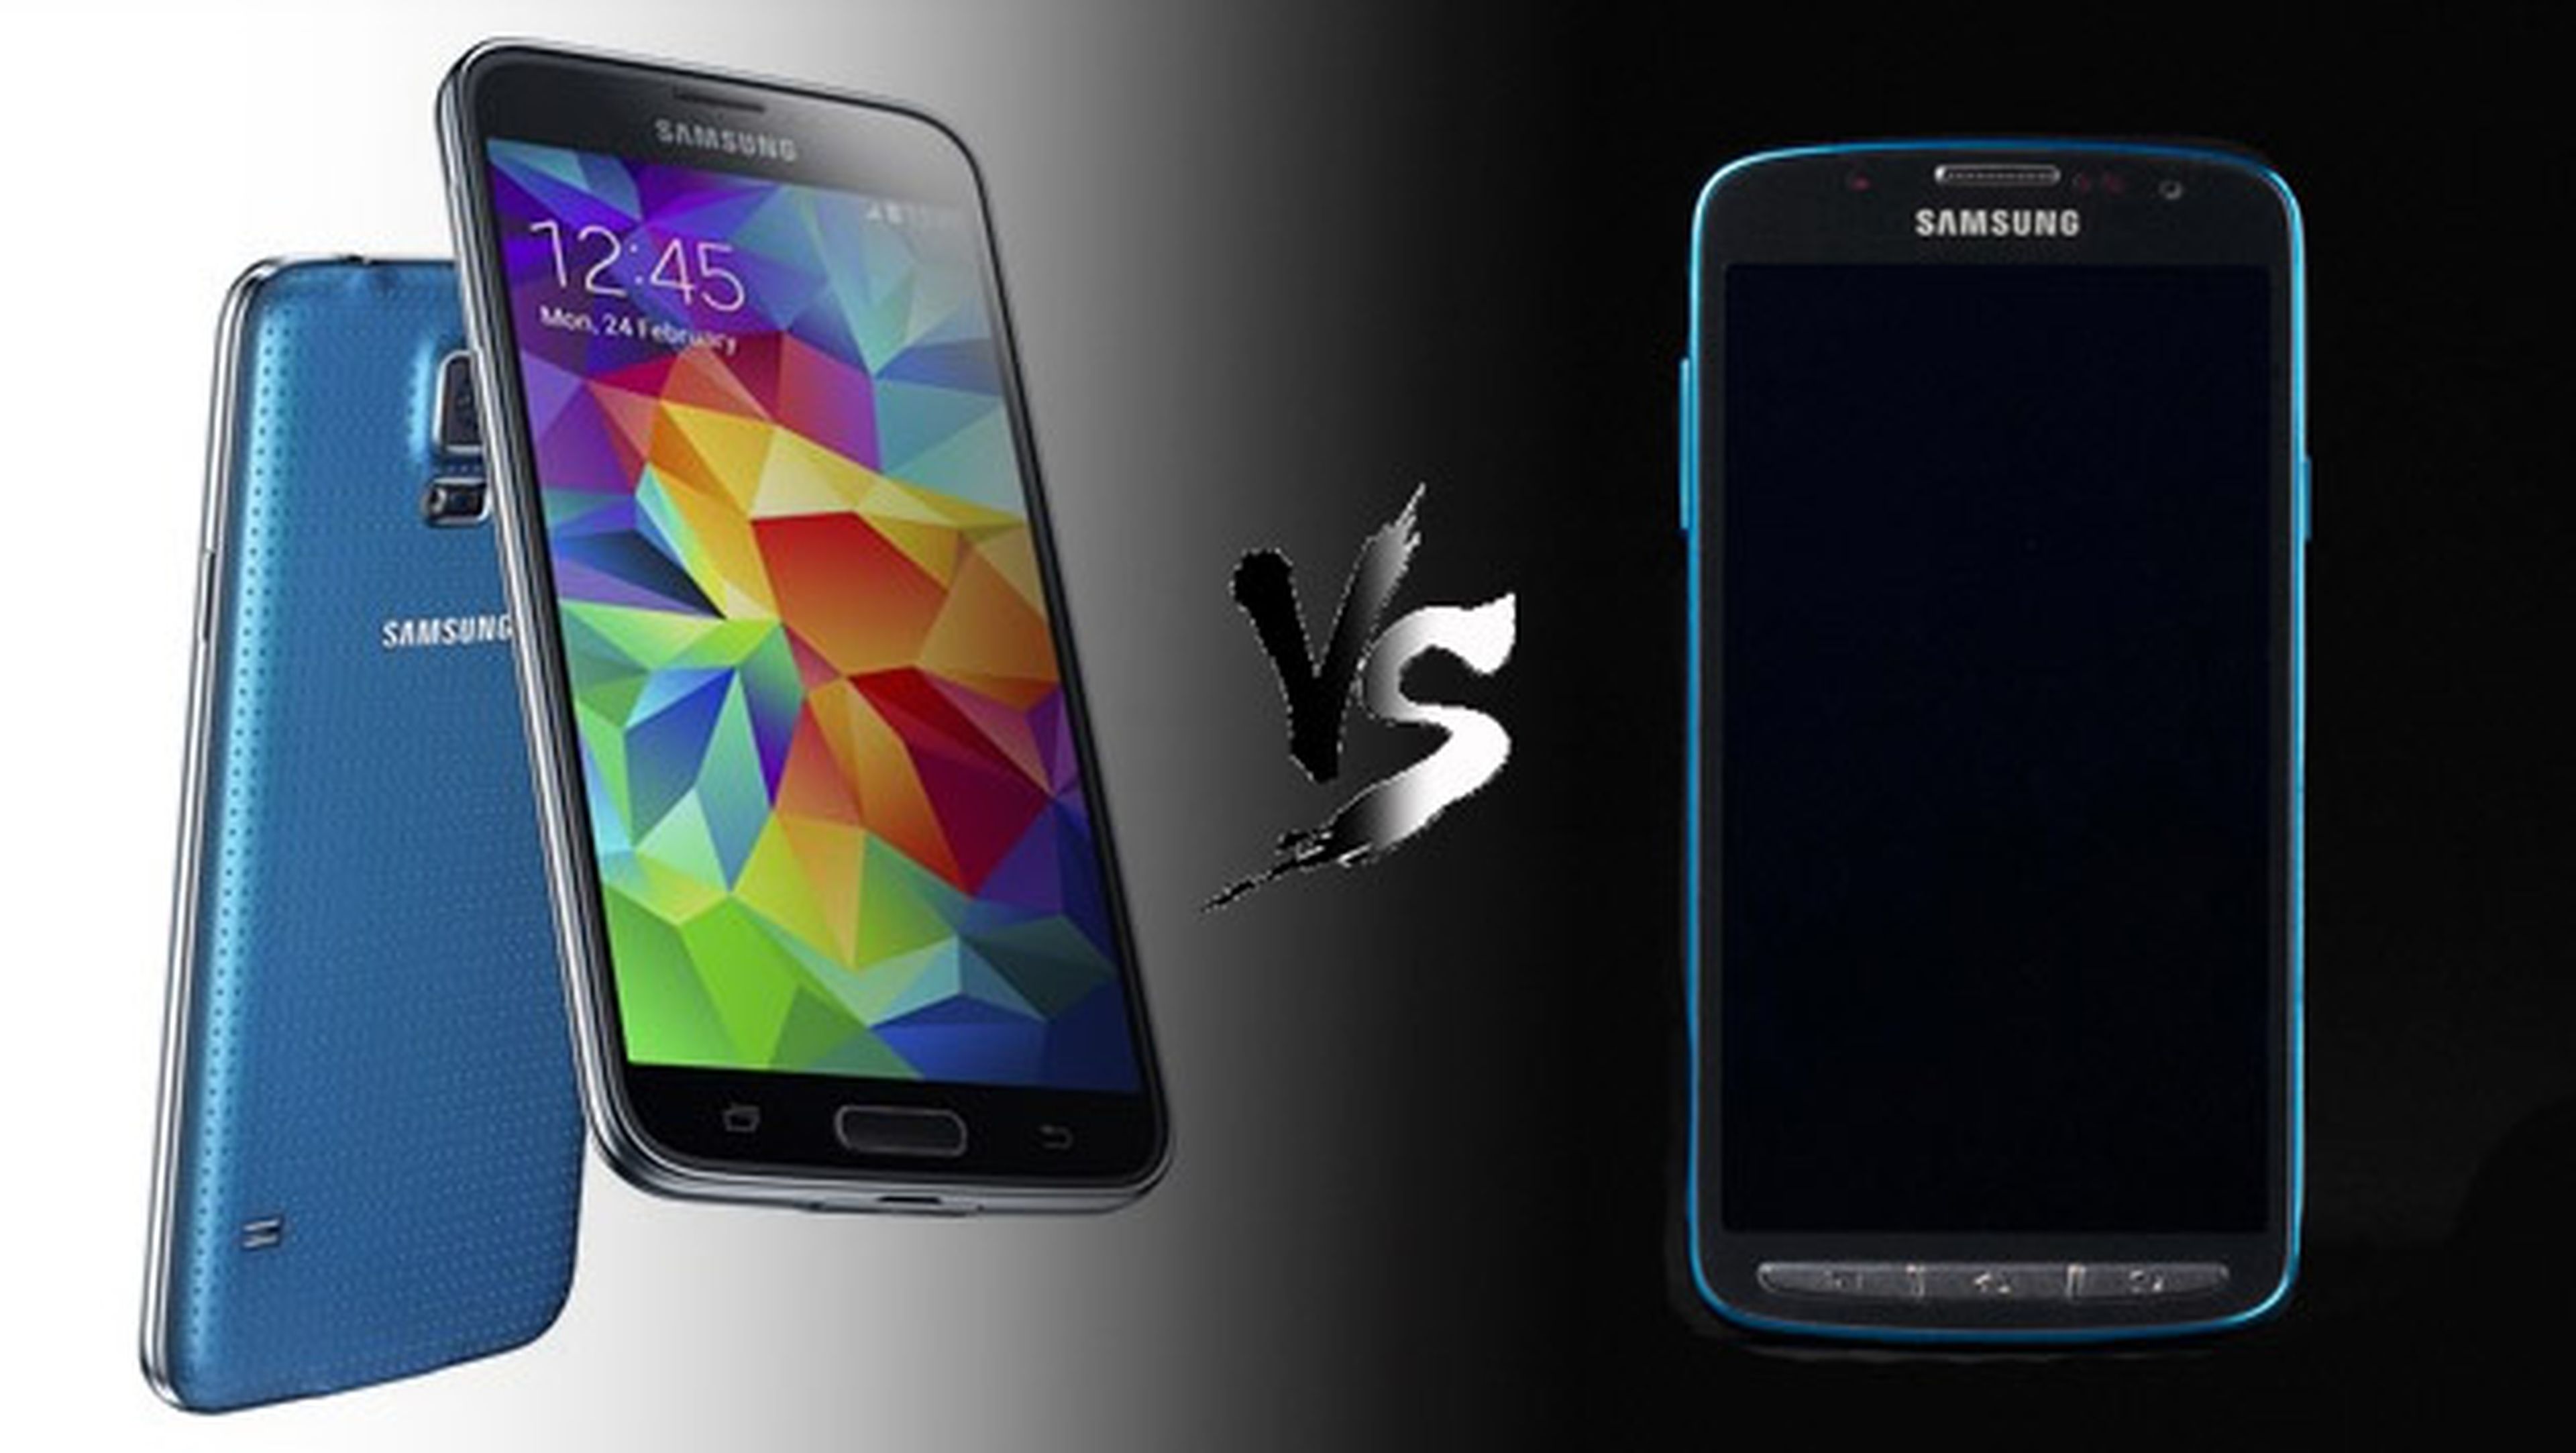 Samsung Galaxy S5 vs Samsung Galaxy F, ¿qué diferencias hay?